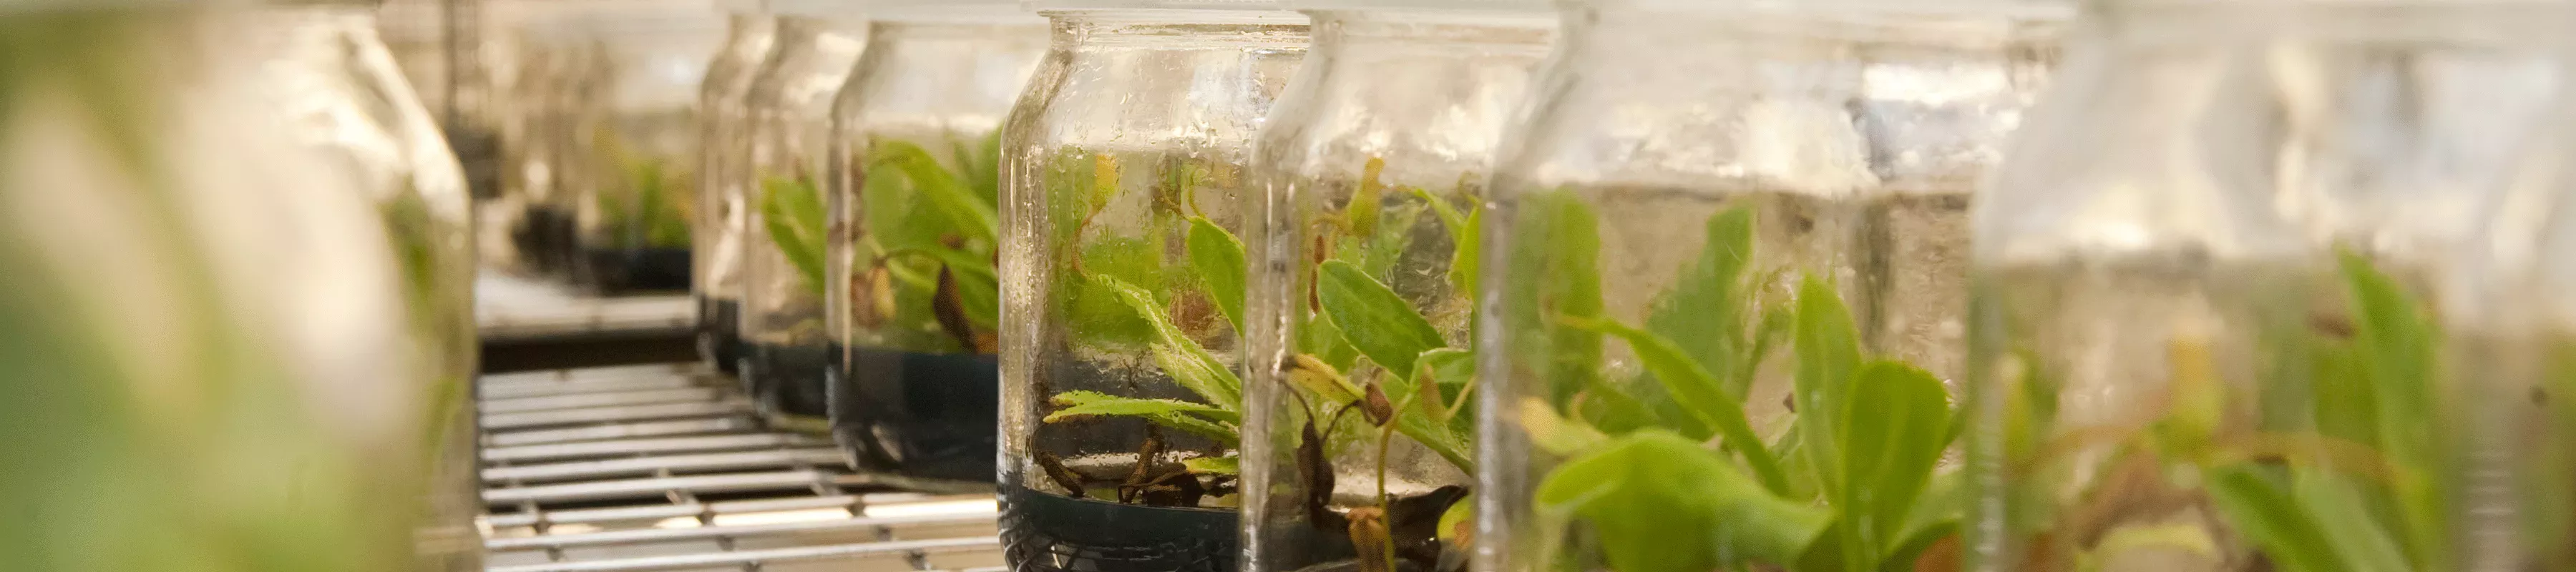 Plants propagated in jars in vitro